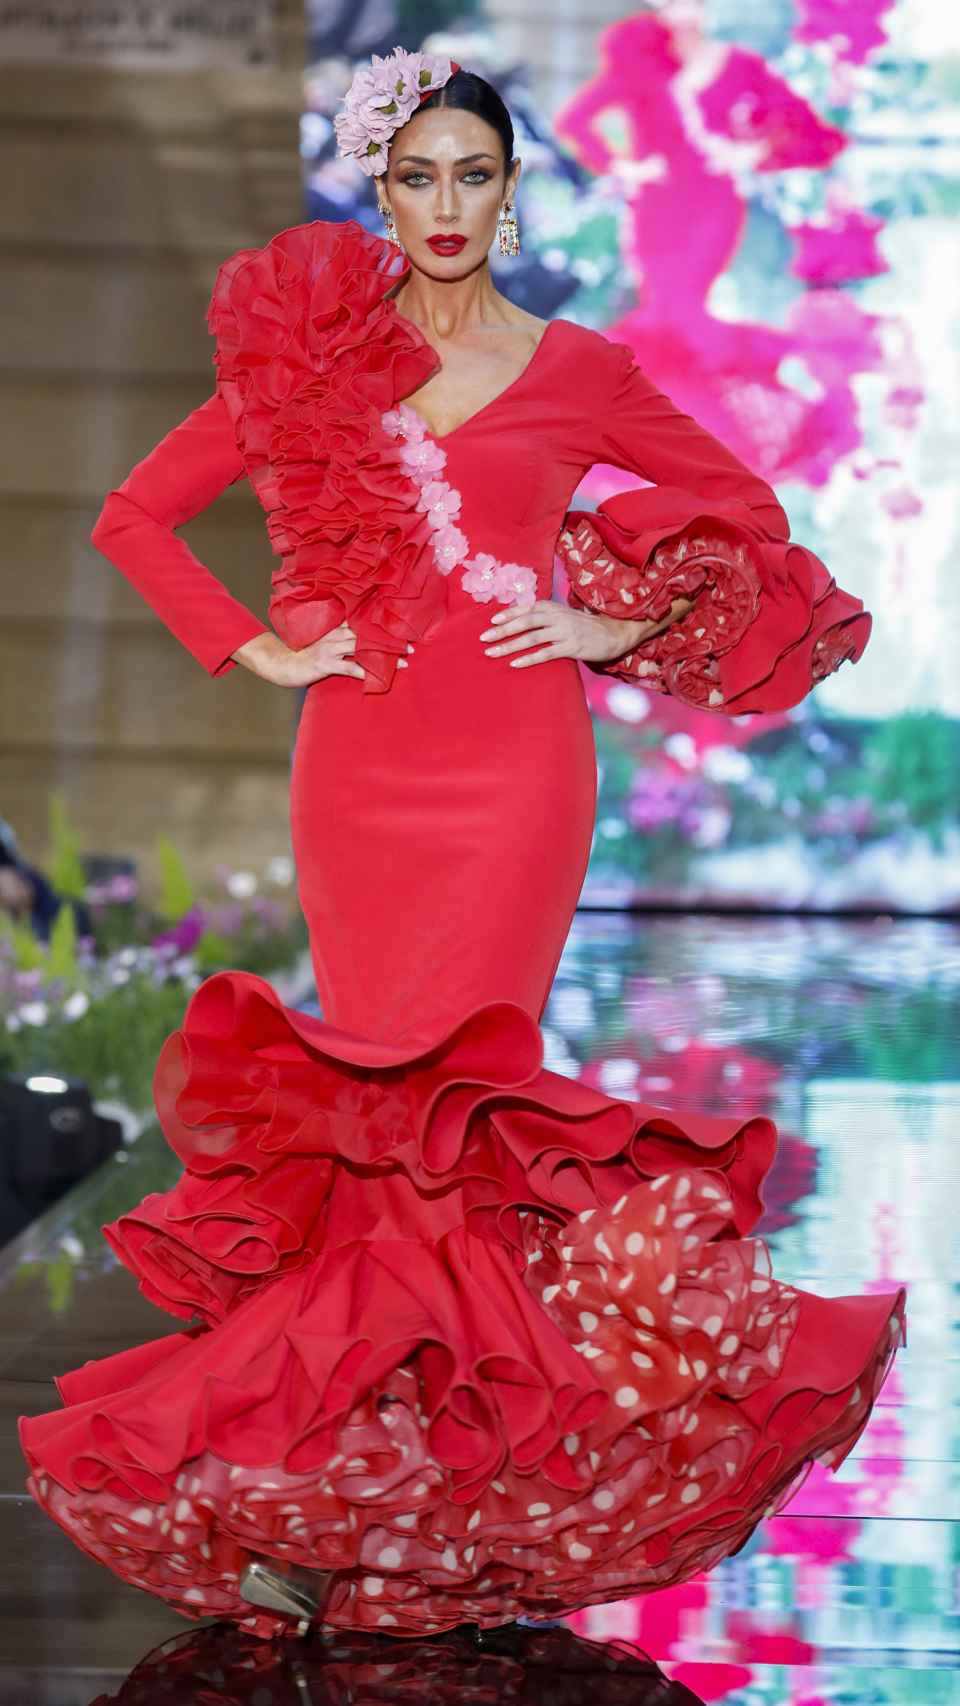 Una modelo desfilando con vestido de flamenca.